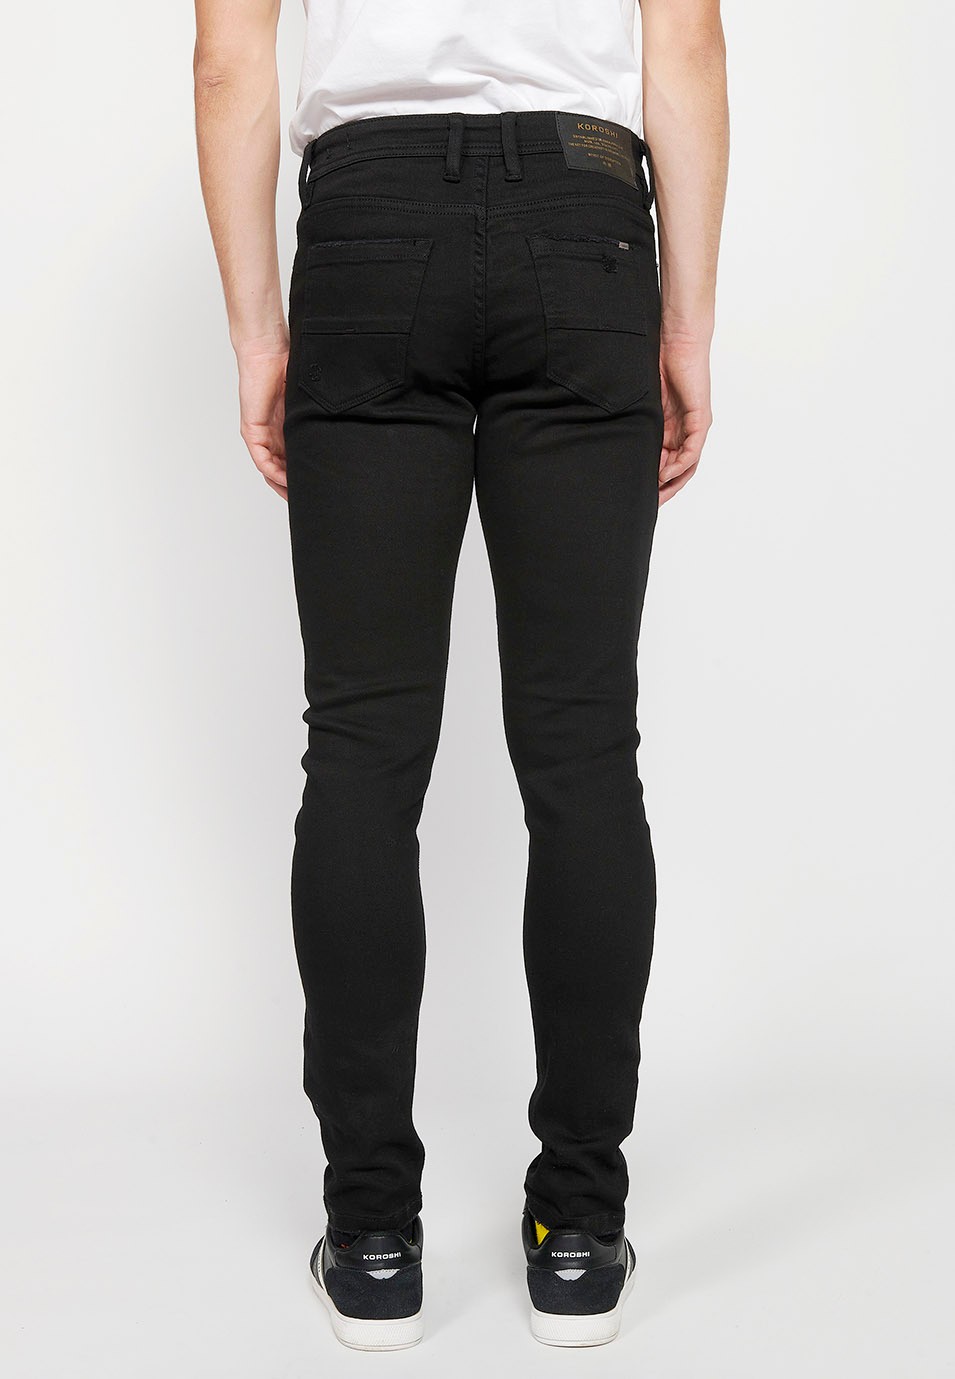 Pantalons texans llarg slim super skinny amb Tancament davanter amb cremallera i botó de Color Denim Negre per a Home 4